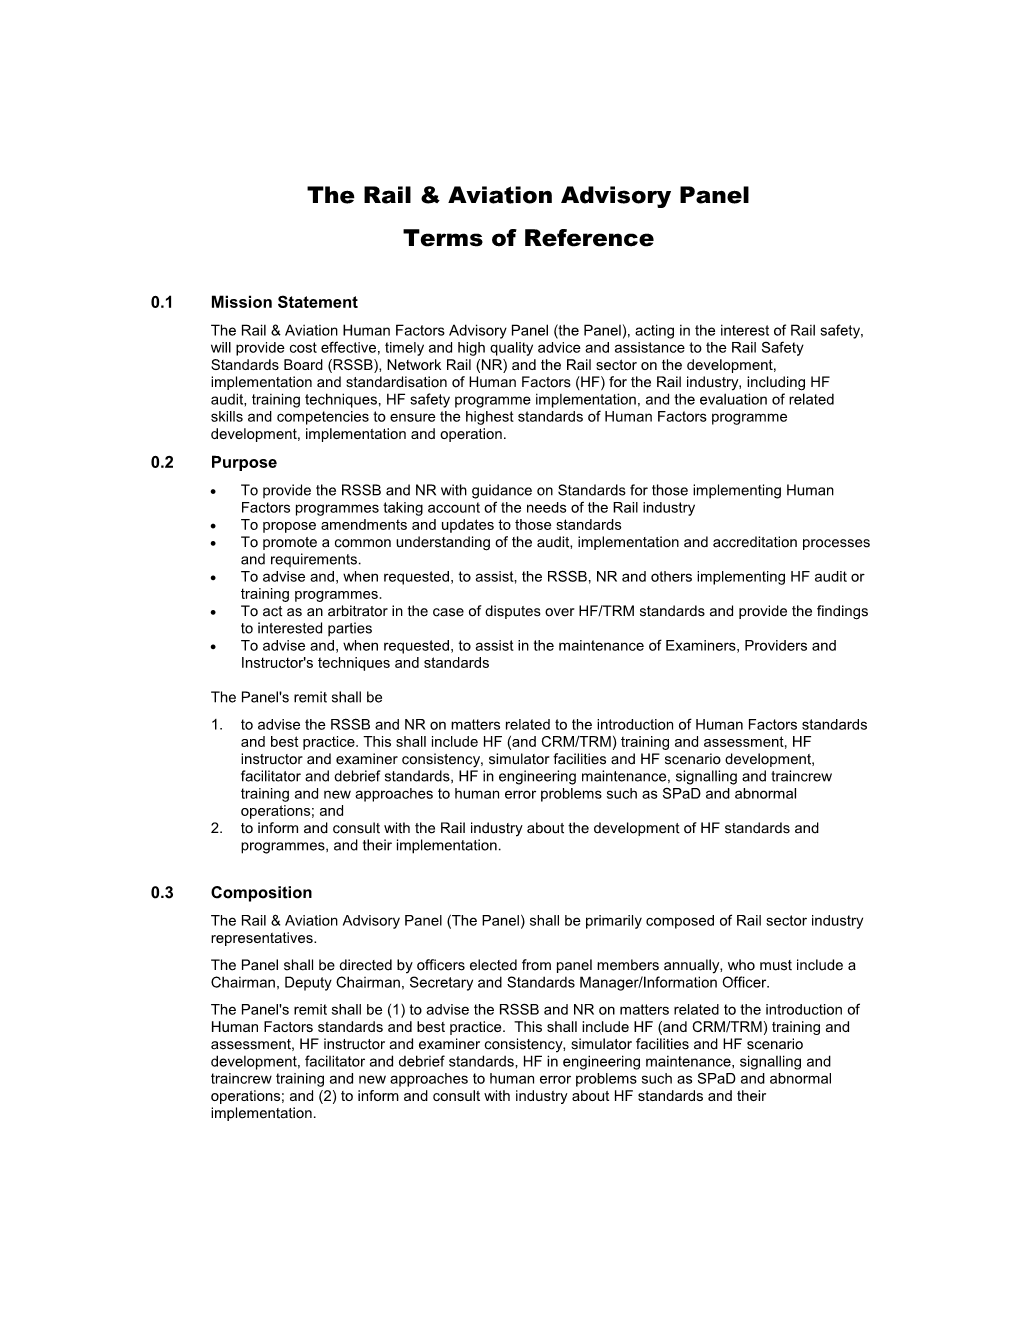 The Rail & Aviation Advisory Board